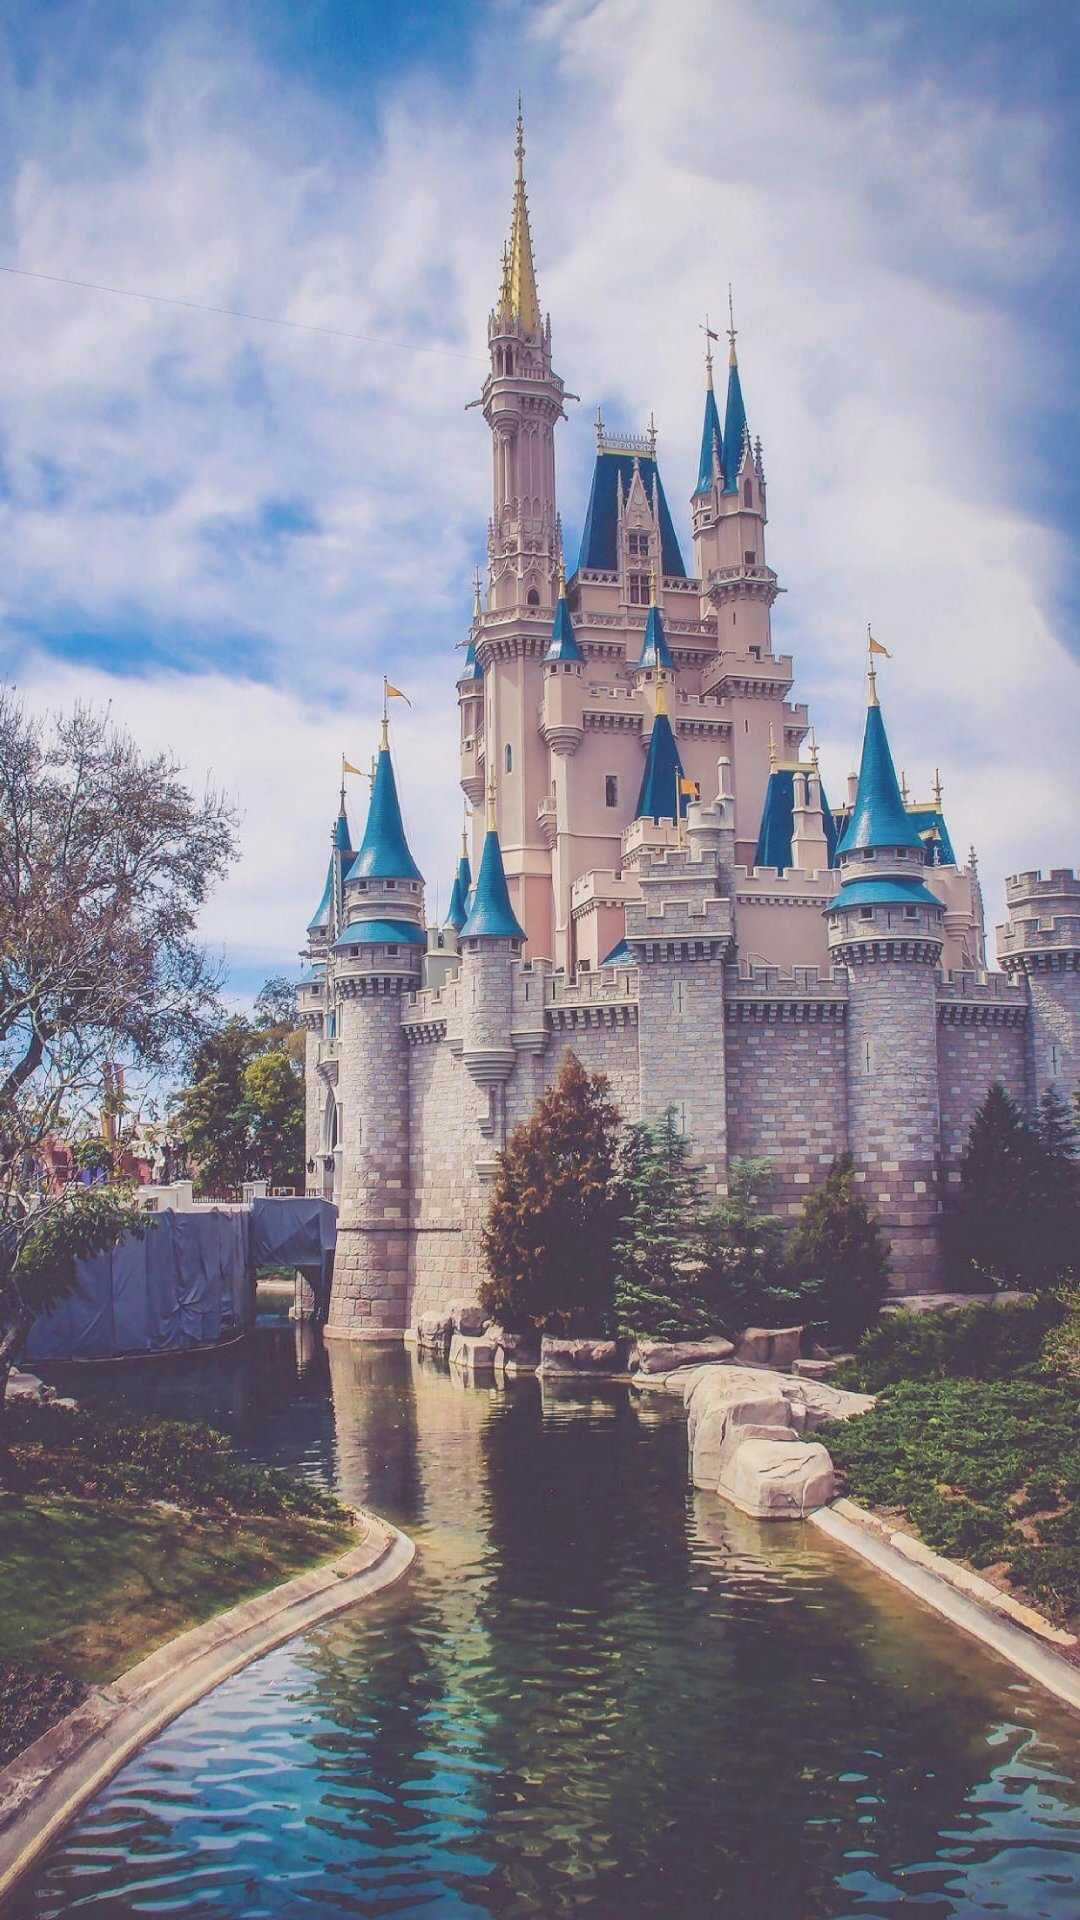 迪士尼城堡壁纸电脑_万图壁纸网